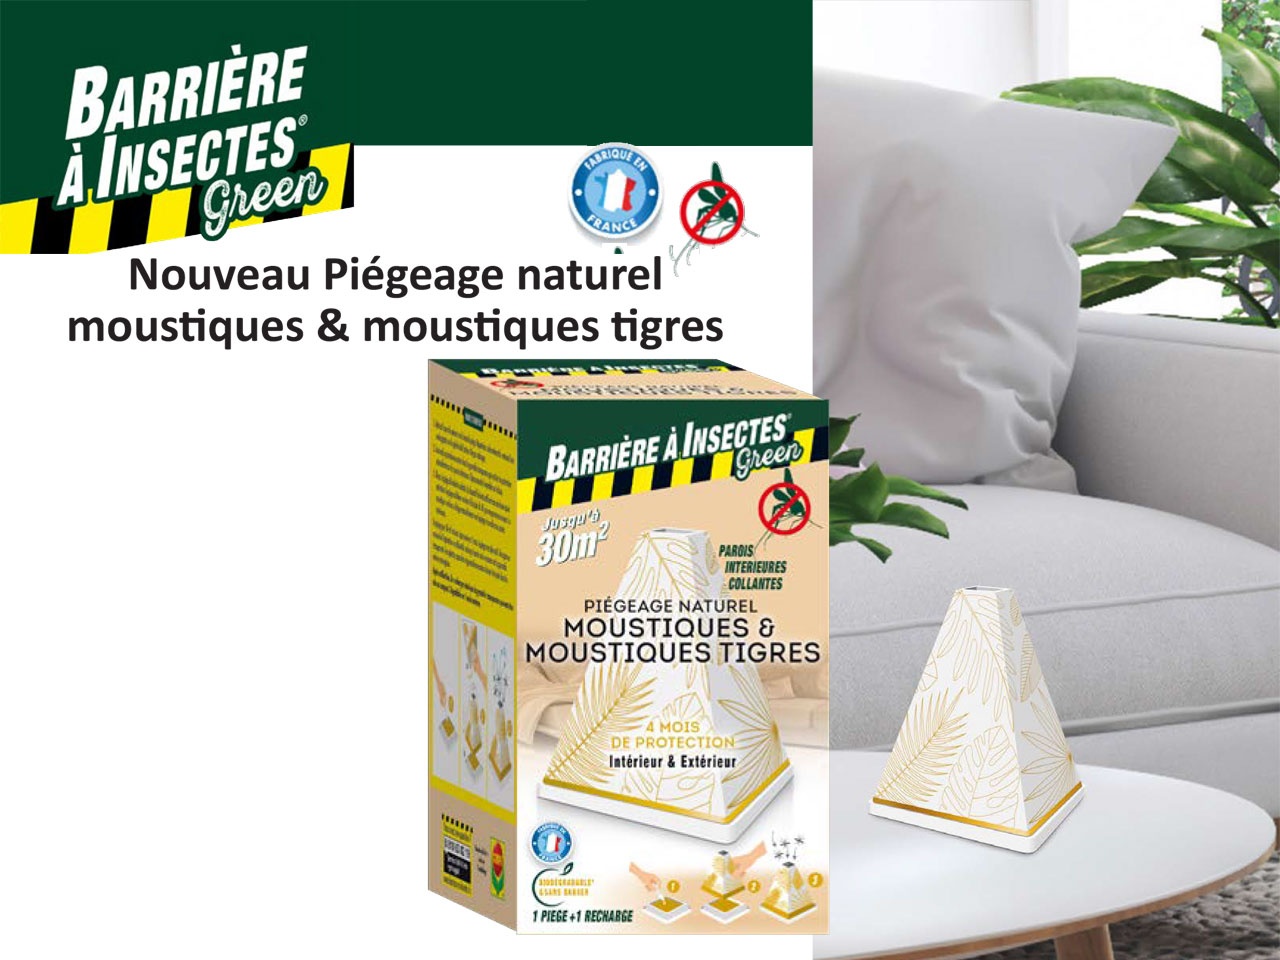 BARRIÈRE à INSECTES Green : nouveauté pièges naturels moustiques & moustiques tigres